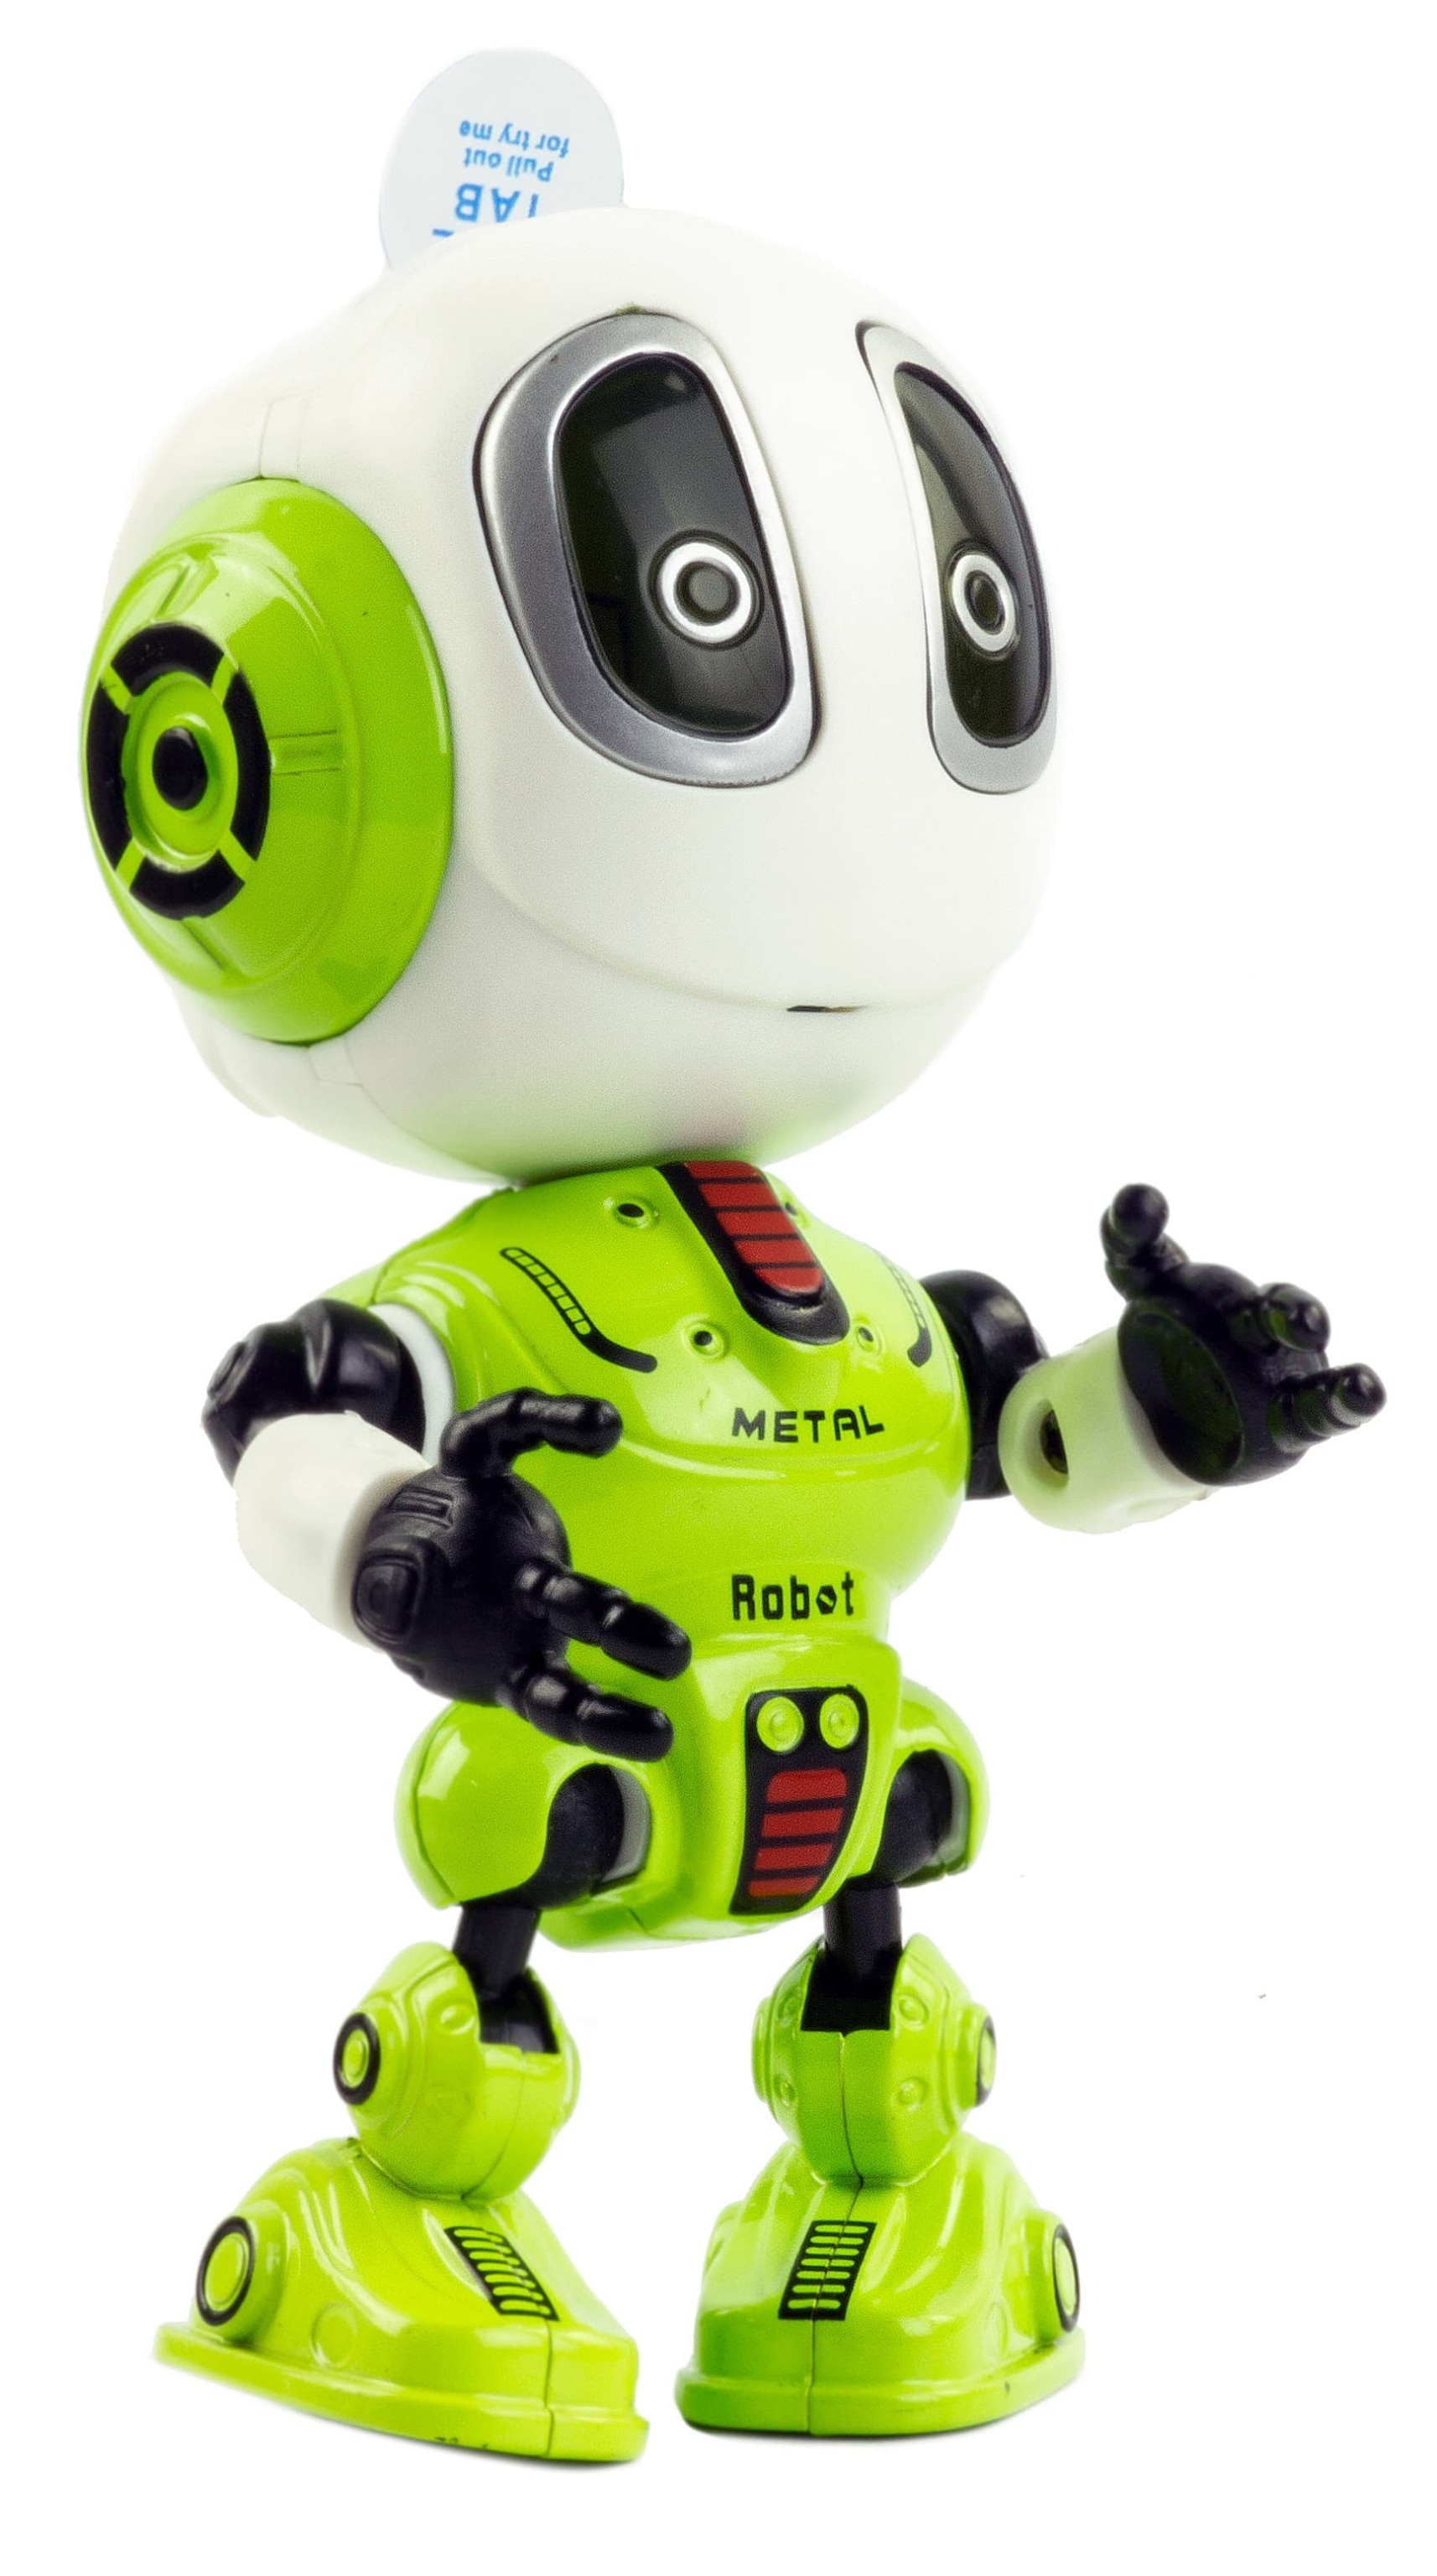 Металлический робот интерактивный 12 см., световые и звуковые эффекты, MY66-Q2202 / Зеленый